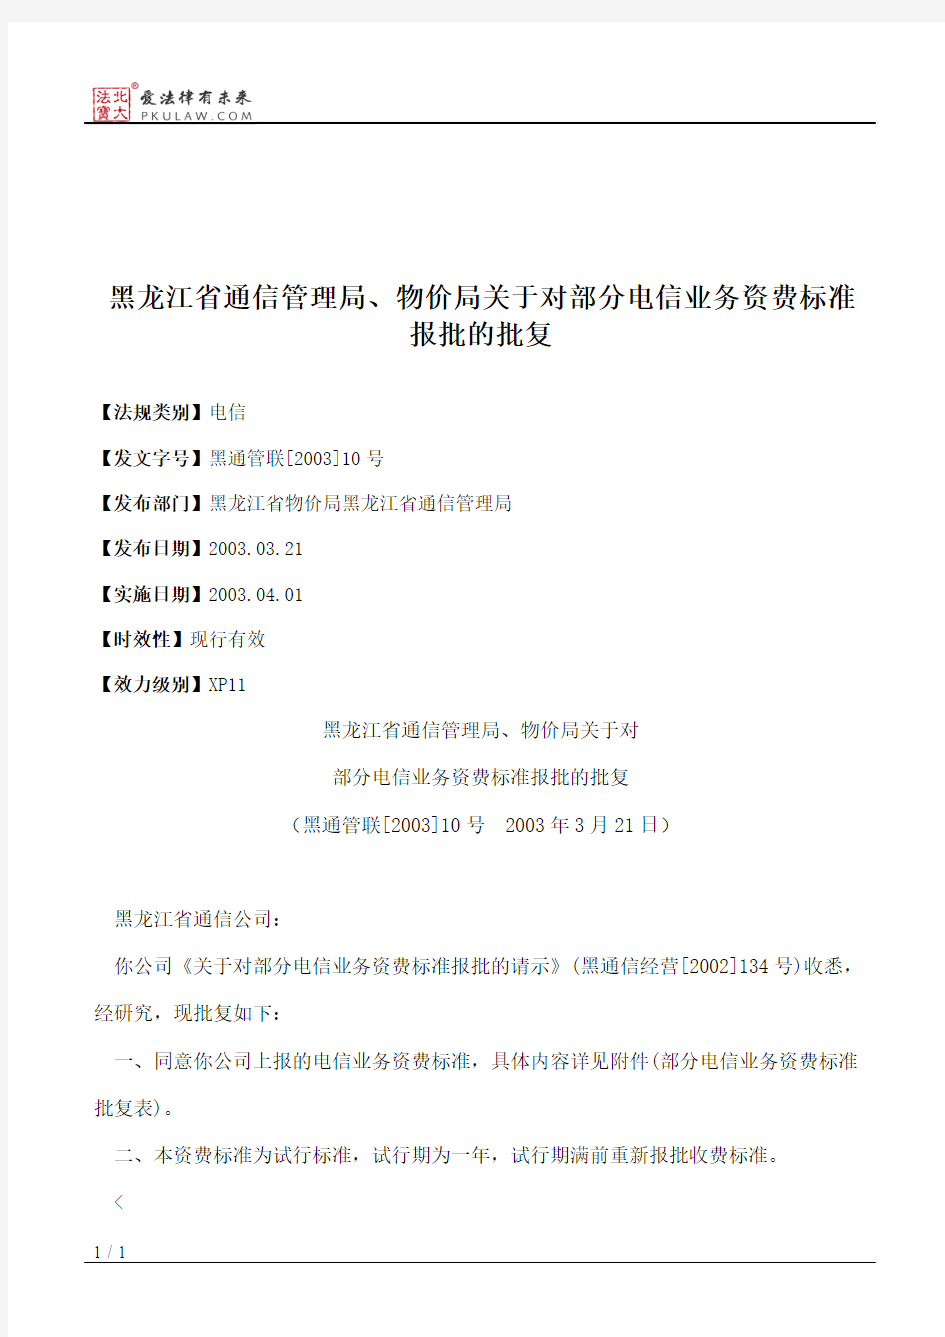 黑龙江省通信管理局、物价局关于对部分电信业务资费标准报批的批复